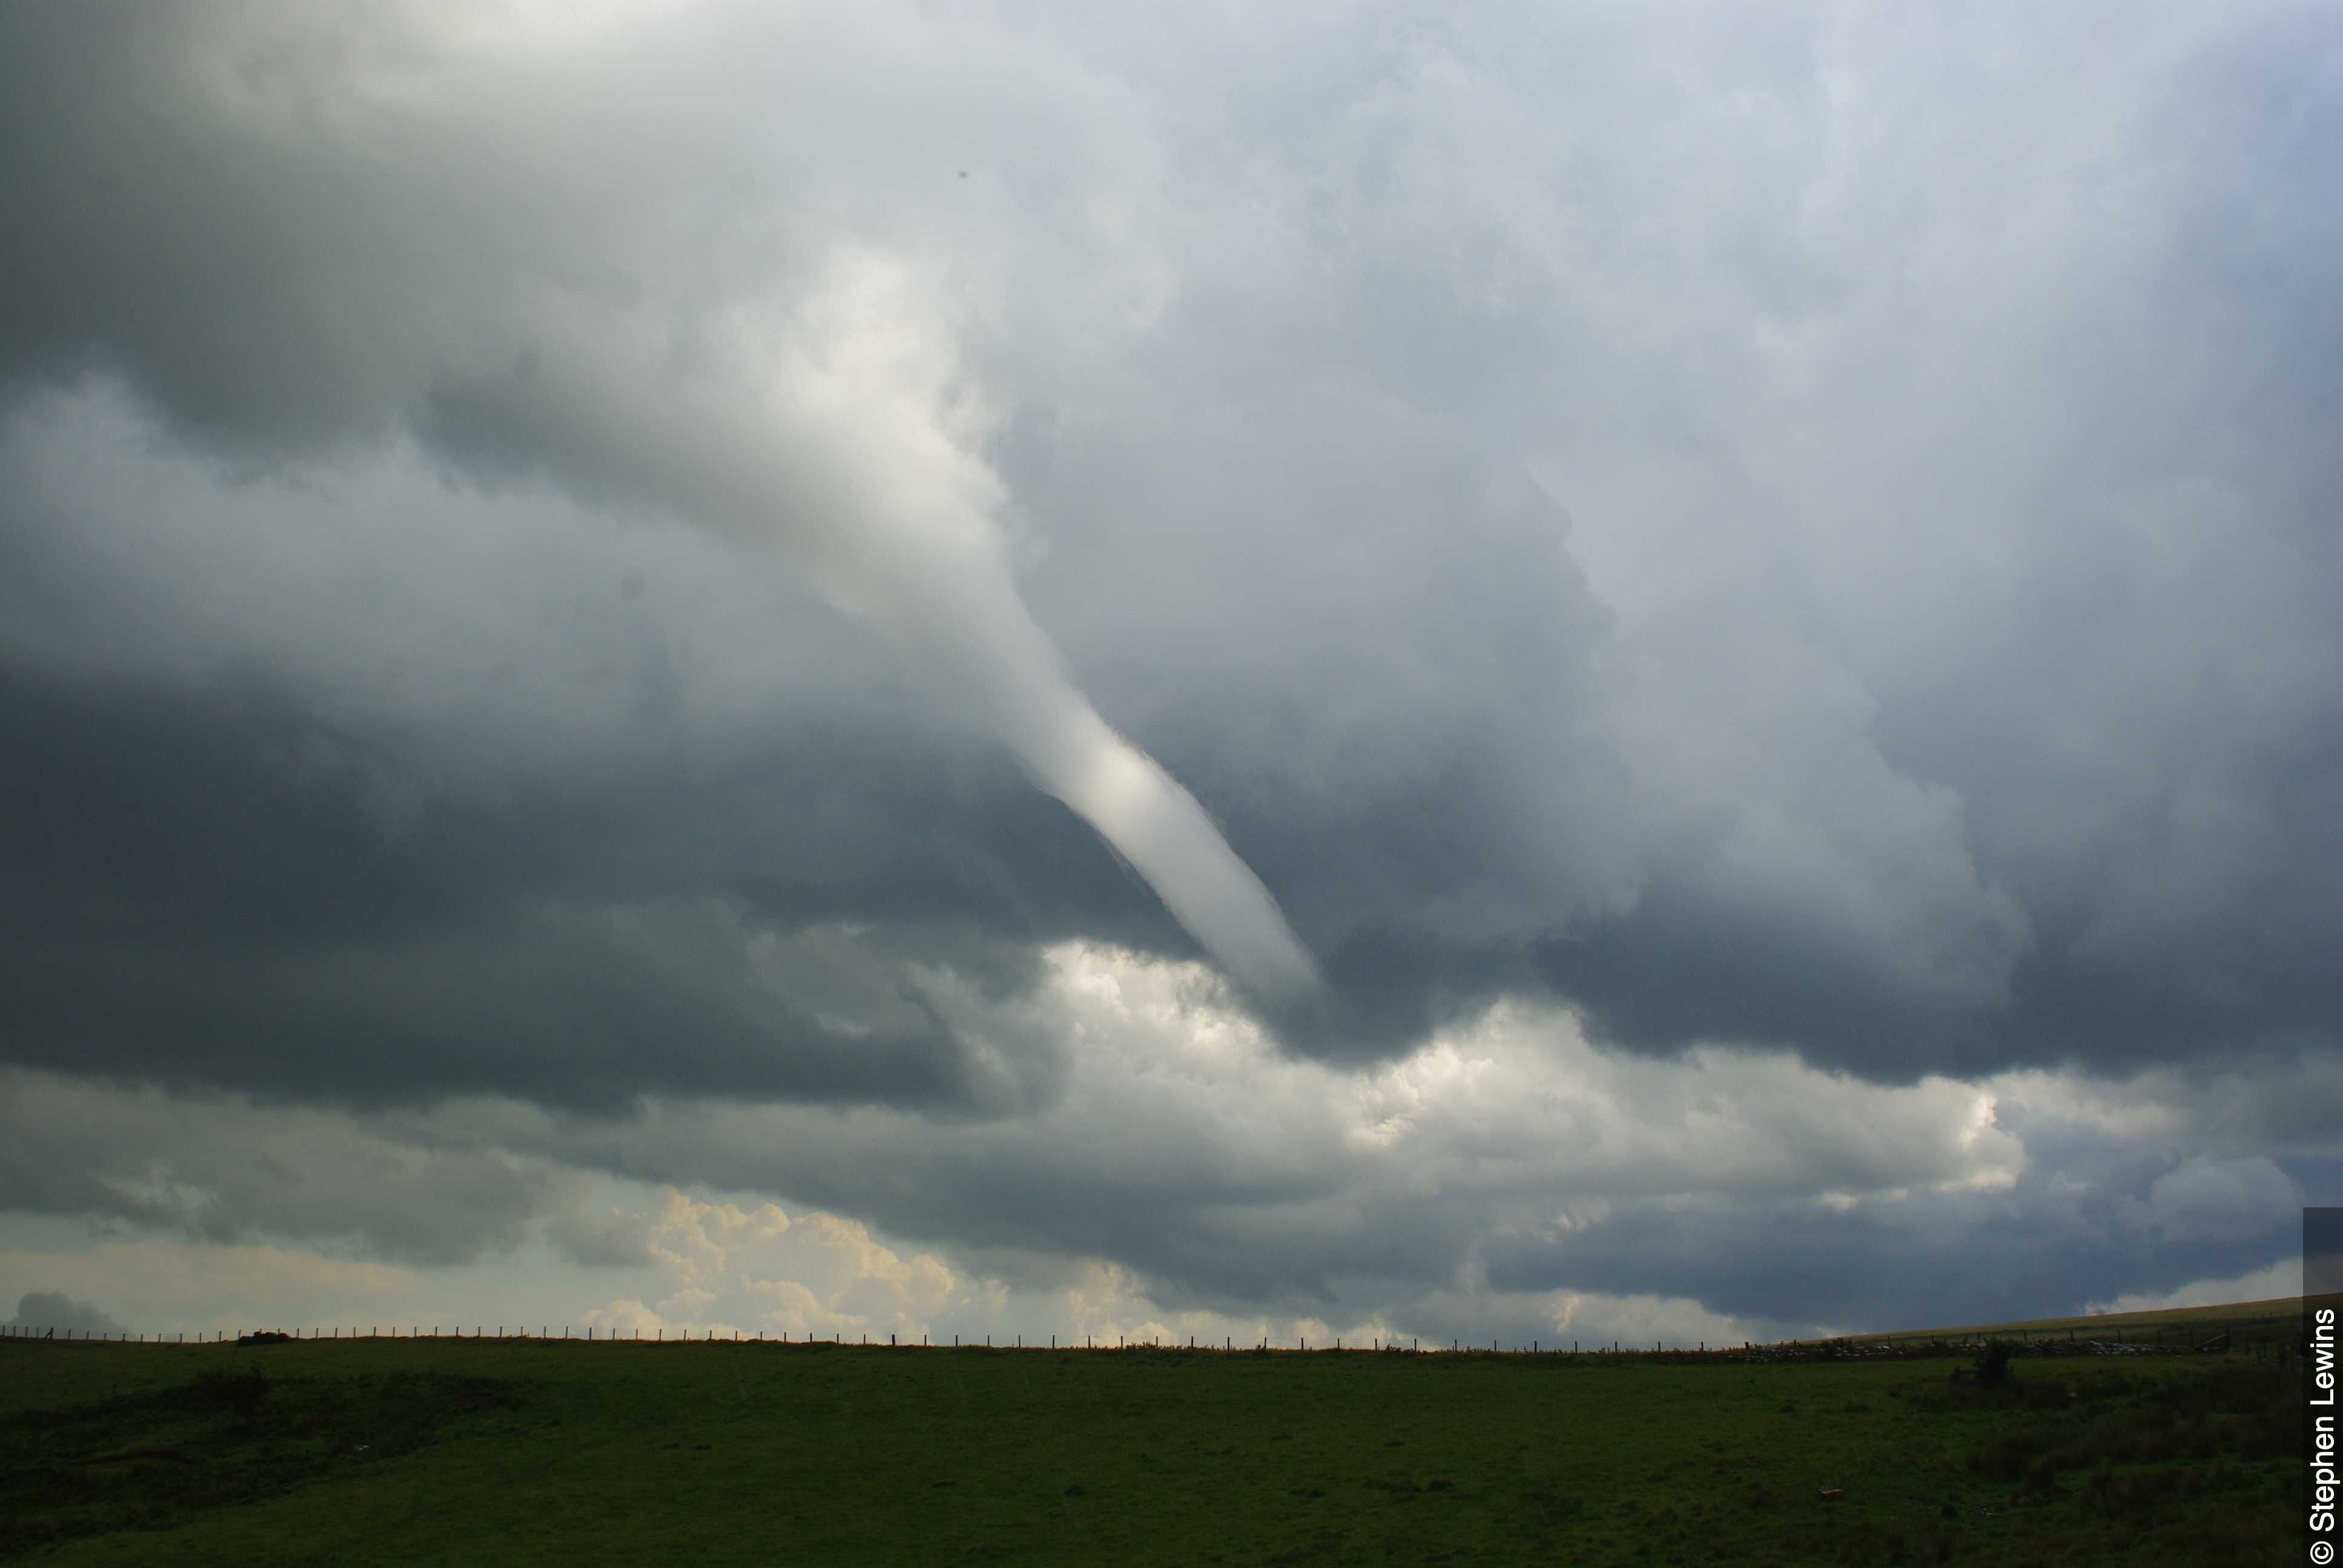 La nube de embudo o, excepcionalmente, tornado pequeño y relativamente débil que puede originarse a partir de un chubasco o tormenta cuando el aire en altitud es inusualmente frío. (Organización Metereológica Mundial)